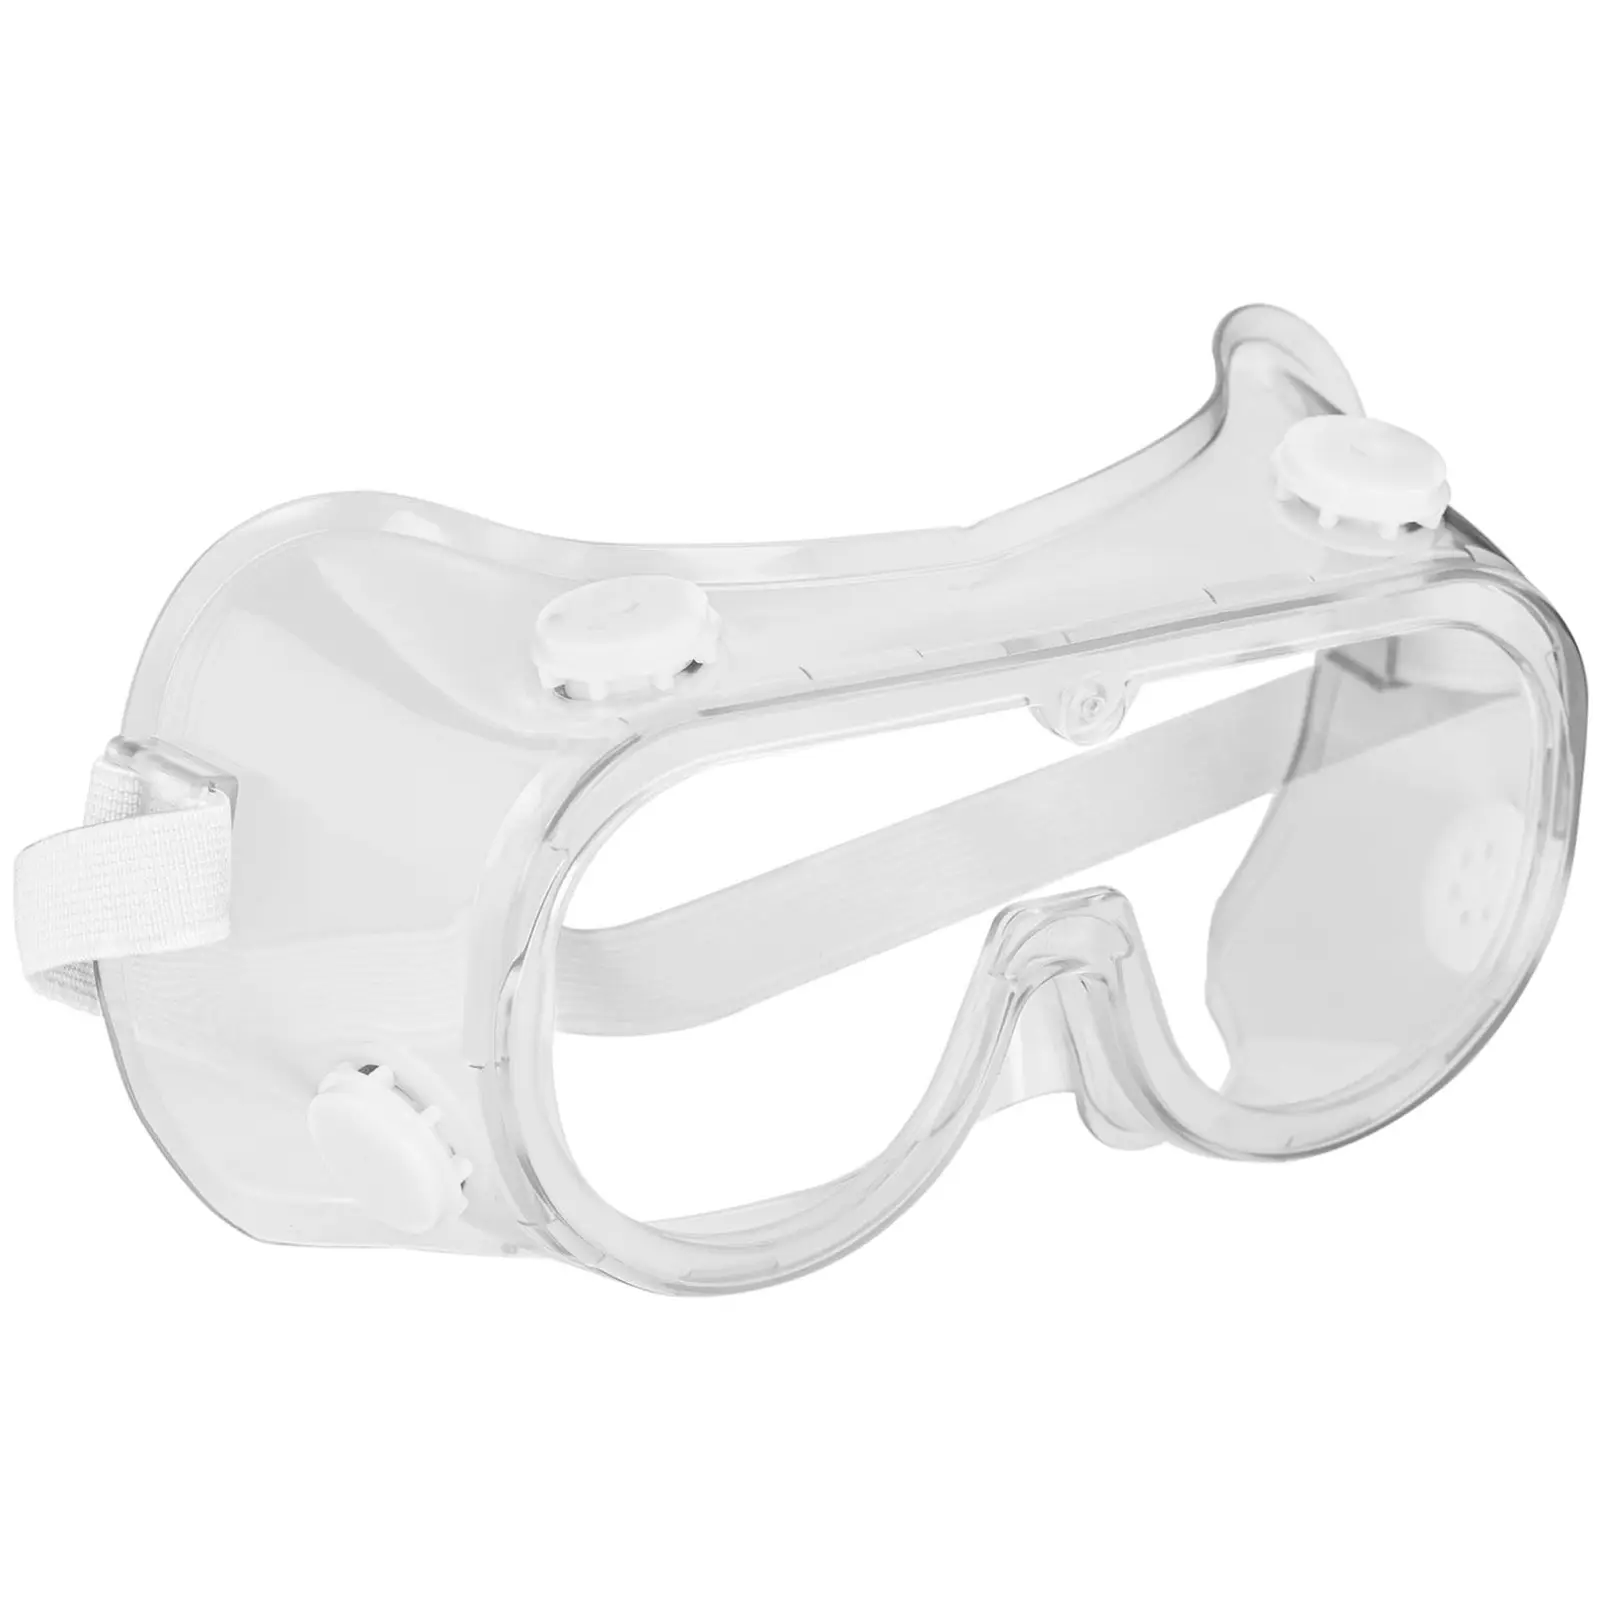 Occhiali protettivi - Set da 3 - Trasparenti - Taglia unica